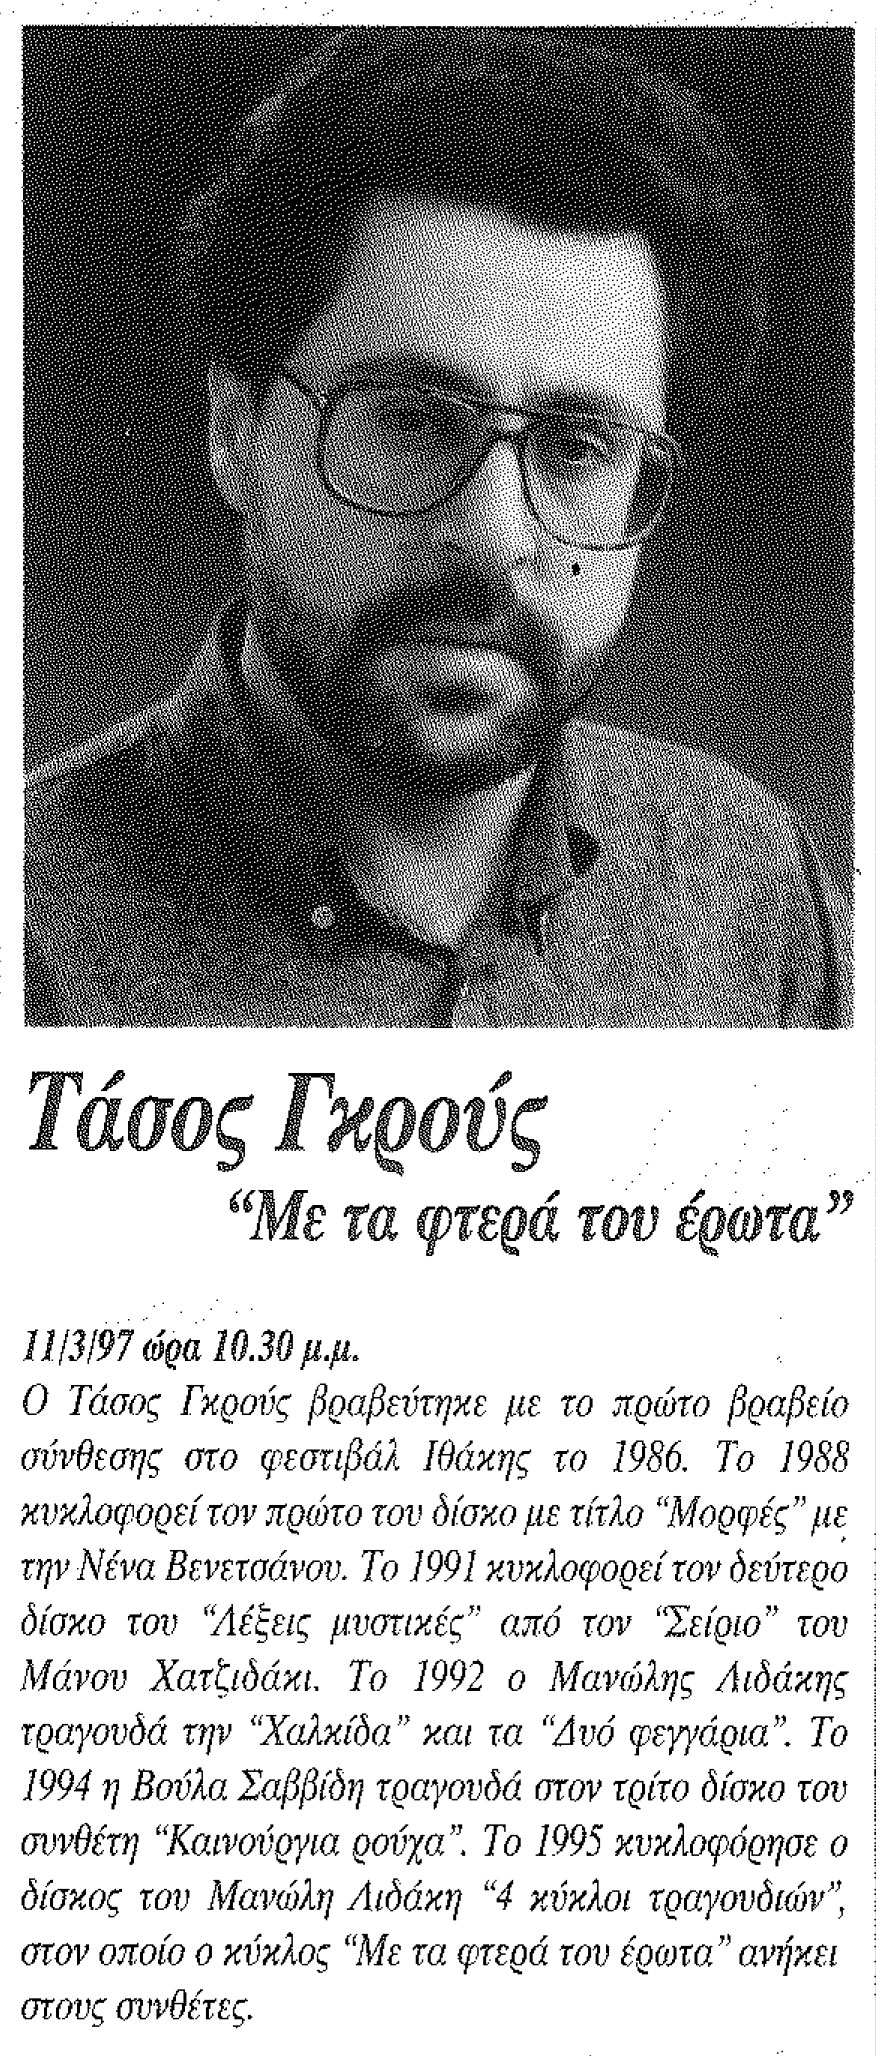 Με τα φτερά του έρωτα ,Τάσος Γκρους ,Άσσος , 11.03.1997